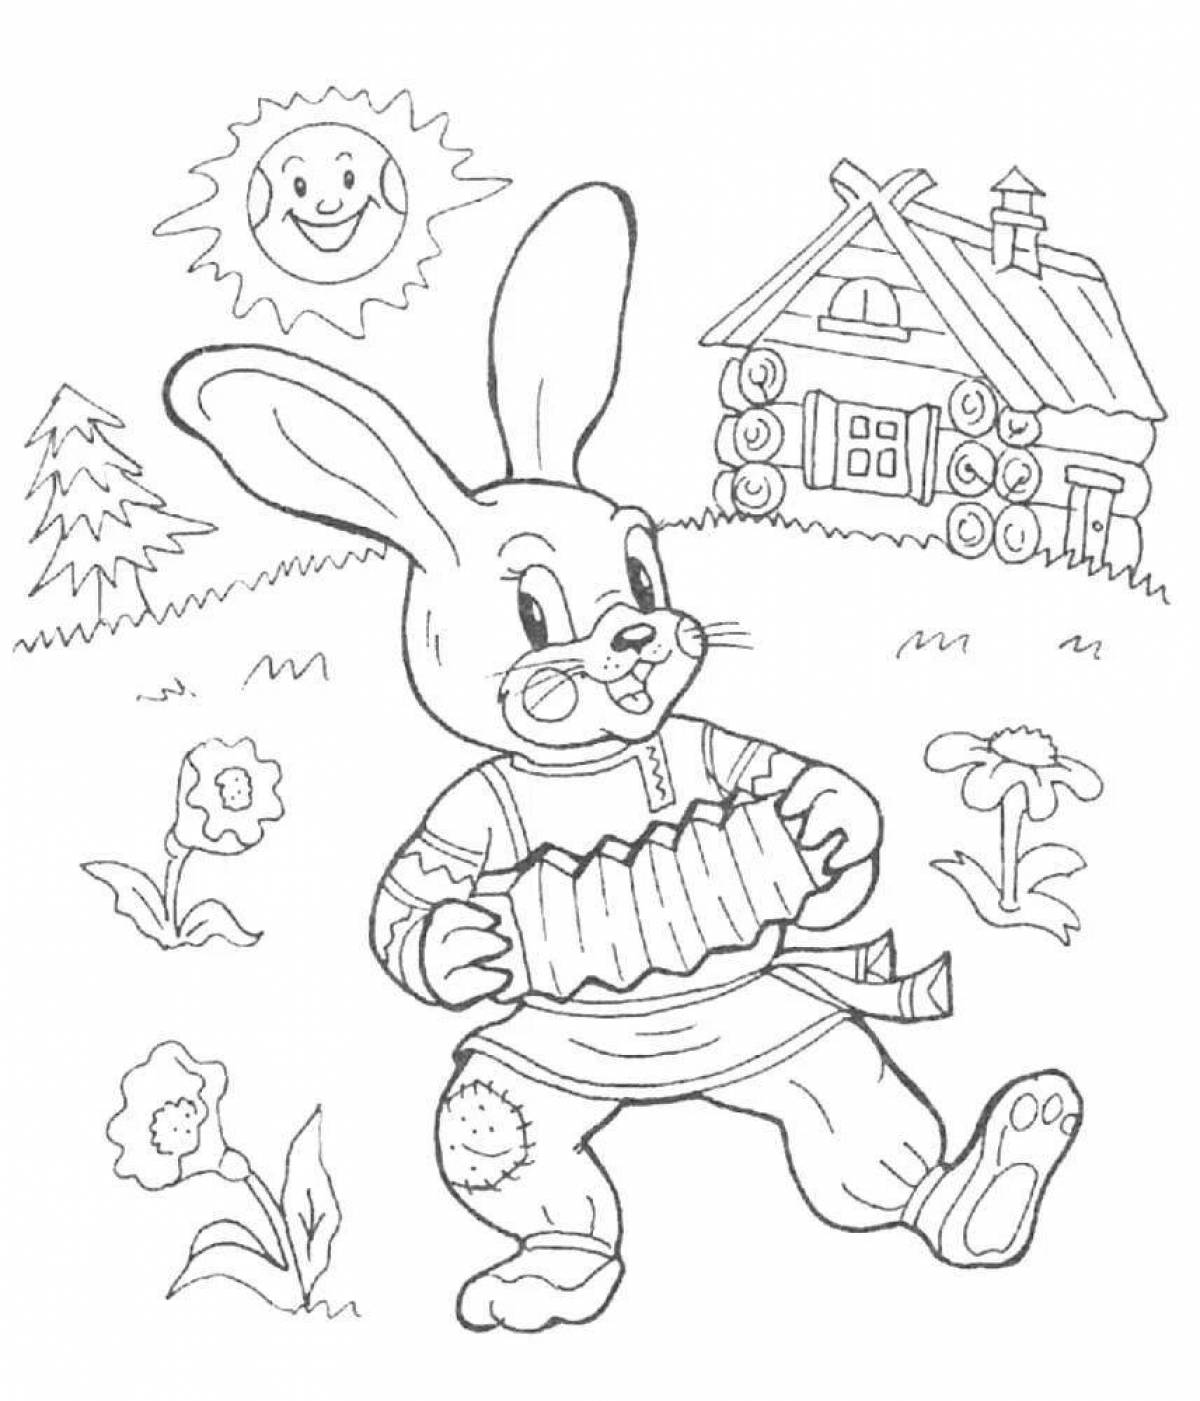 Funny rabbit hut coloring book